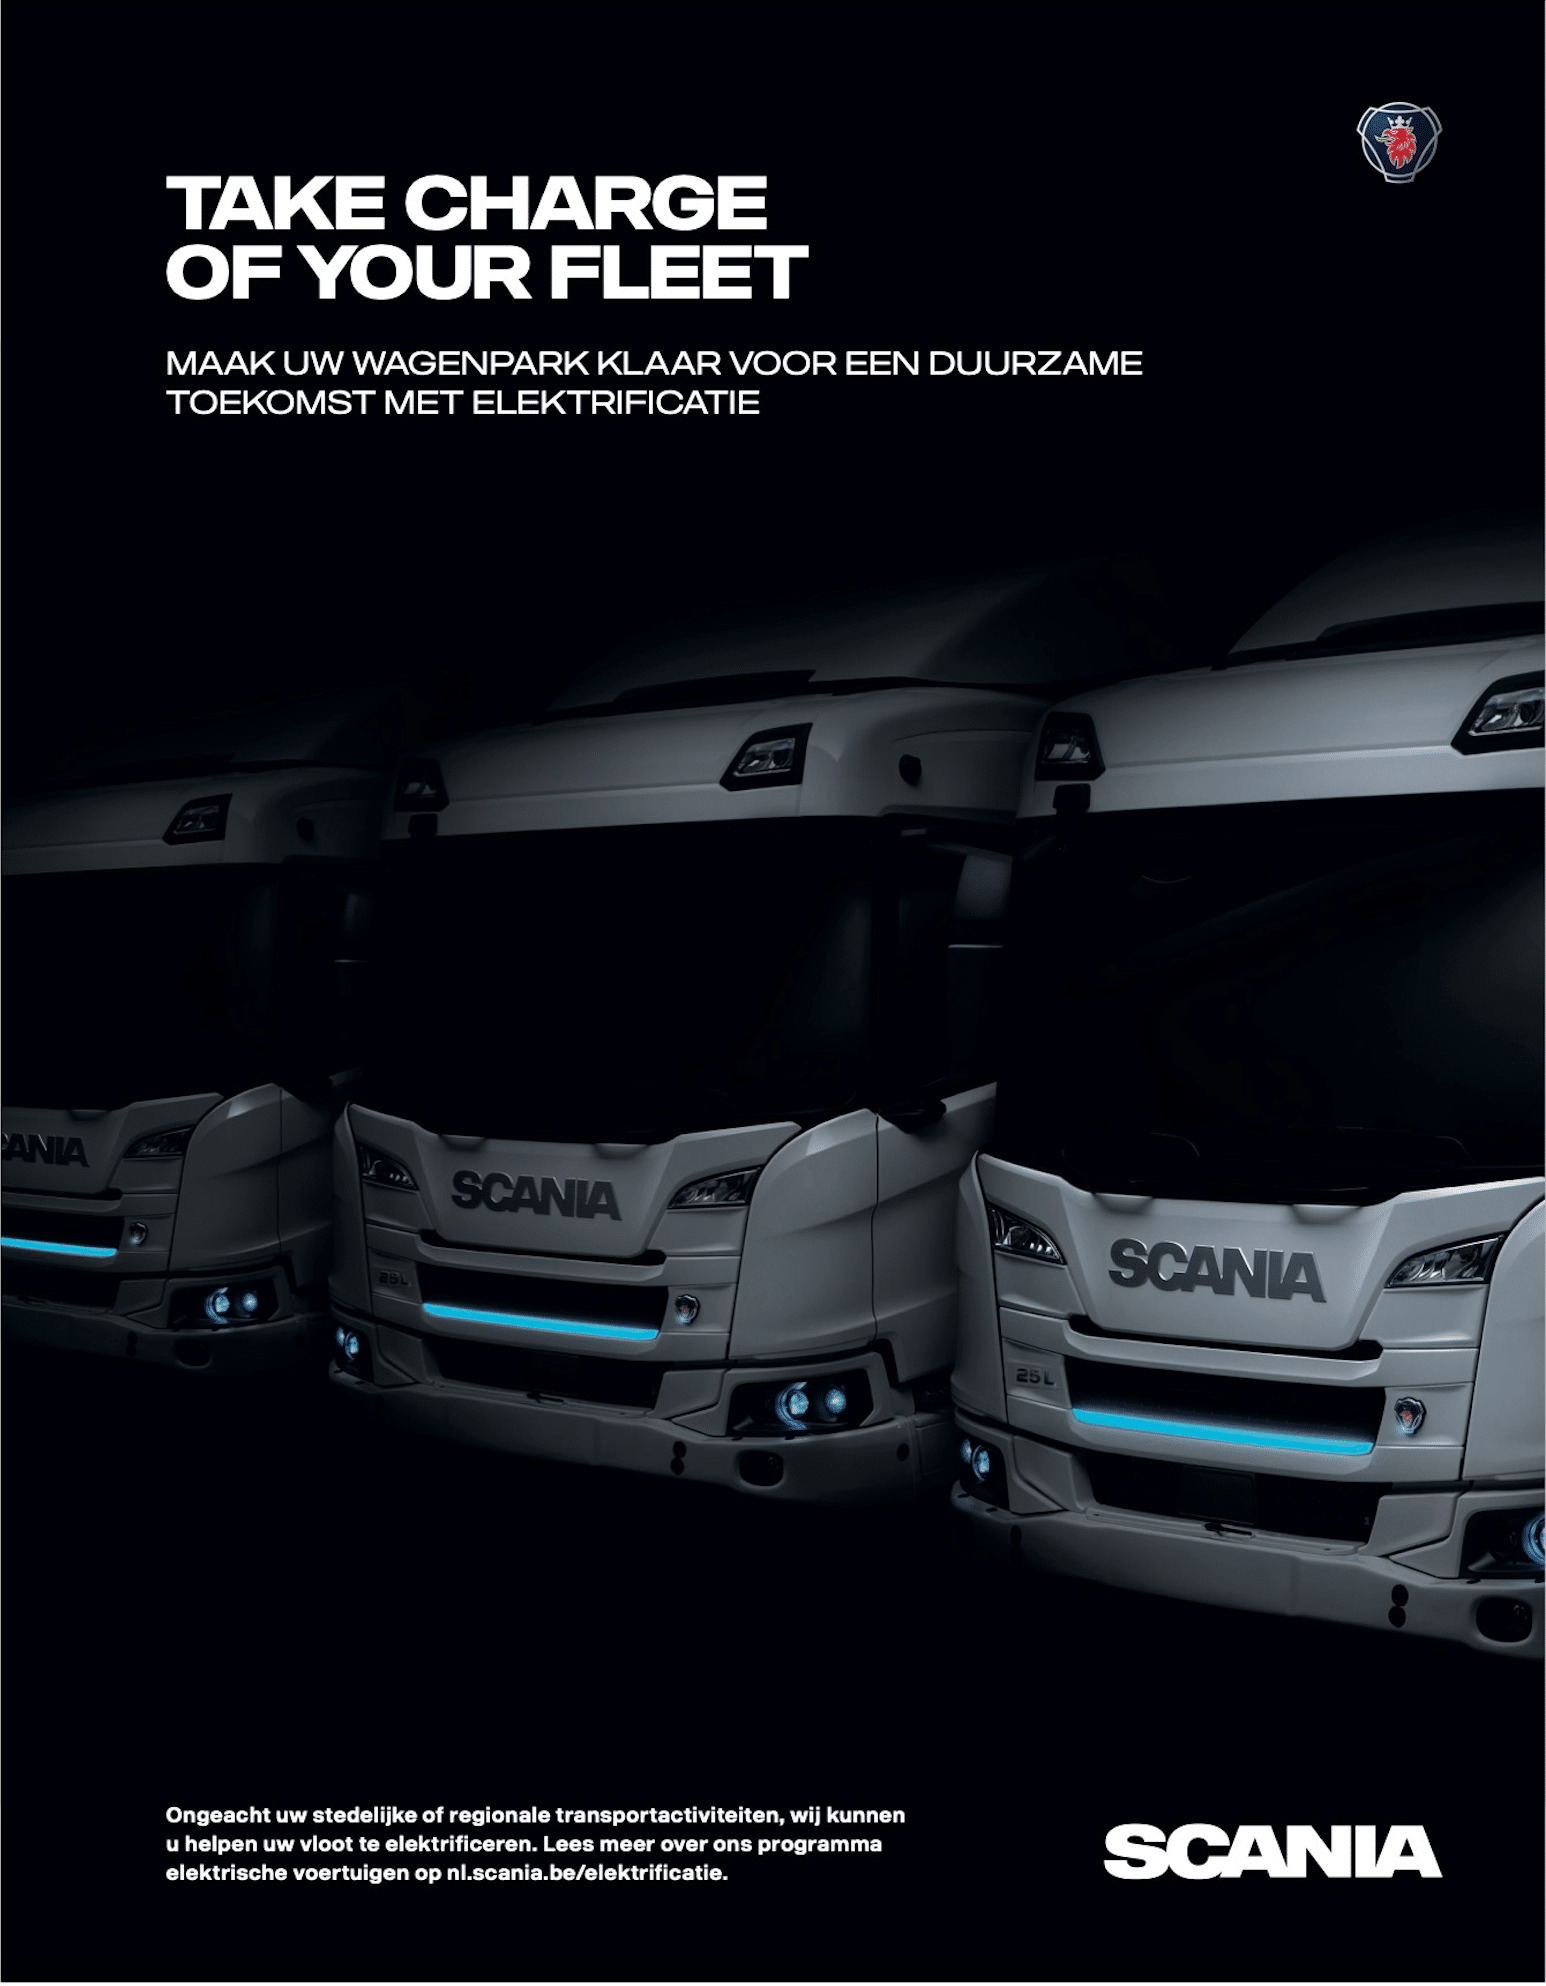 Mijlpaal in Scania’s elektrificatie – introductie eerste elektrische truckprogramma